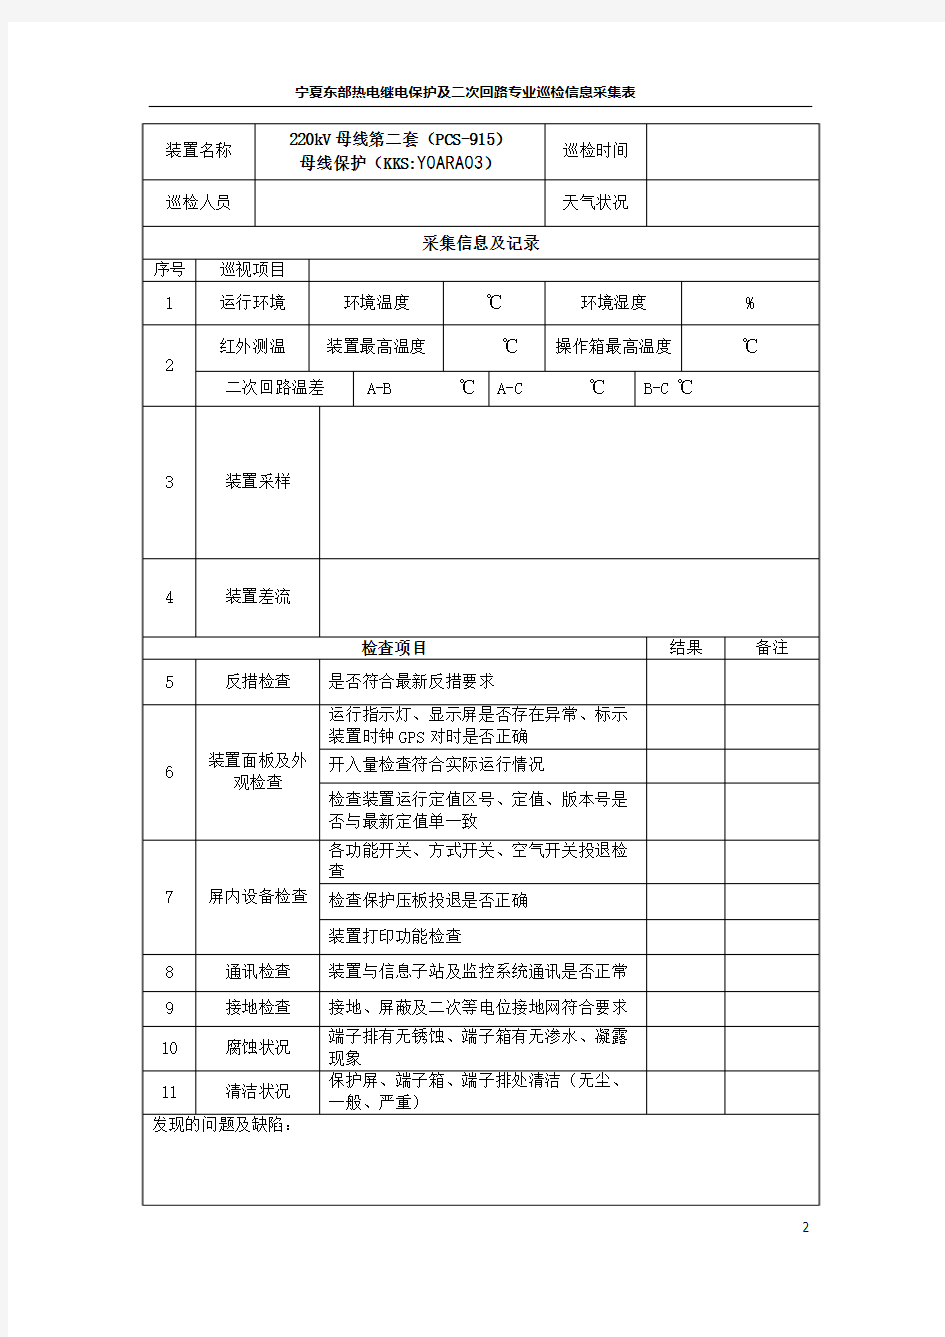 01东部热电继电保护专业巡检表(根据电网公司格式2018修订)